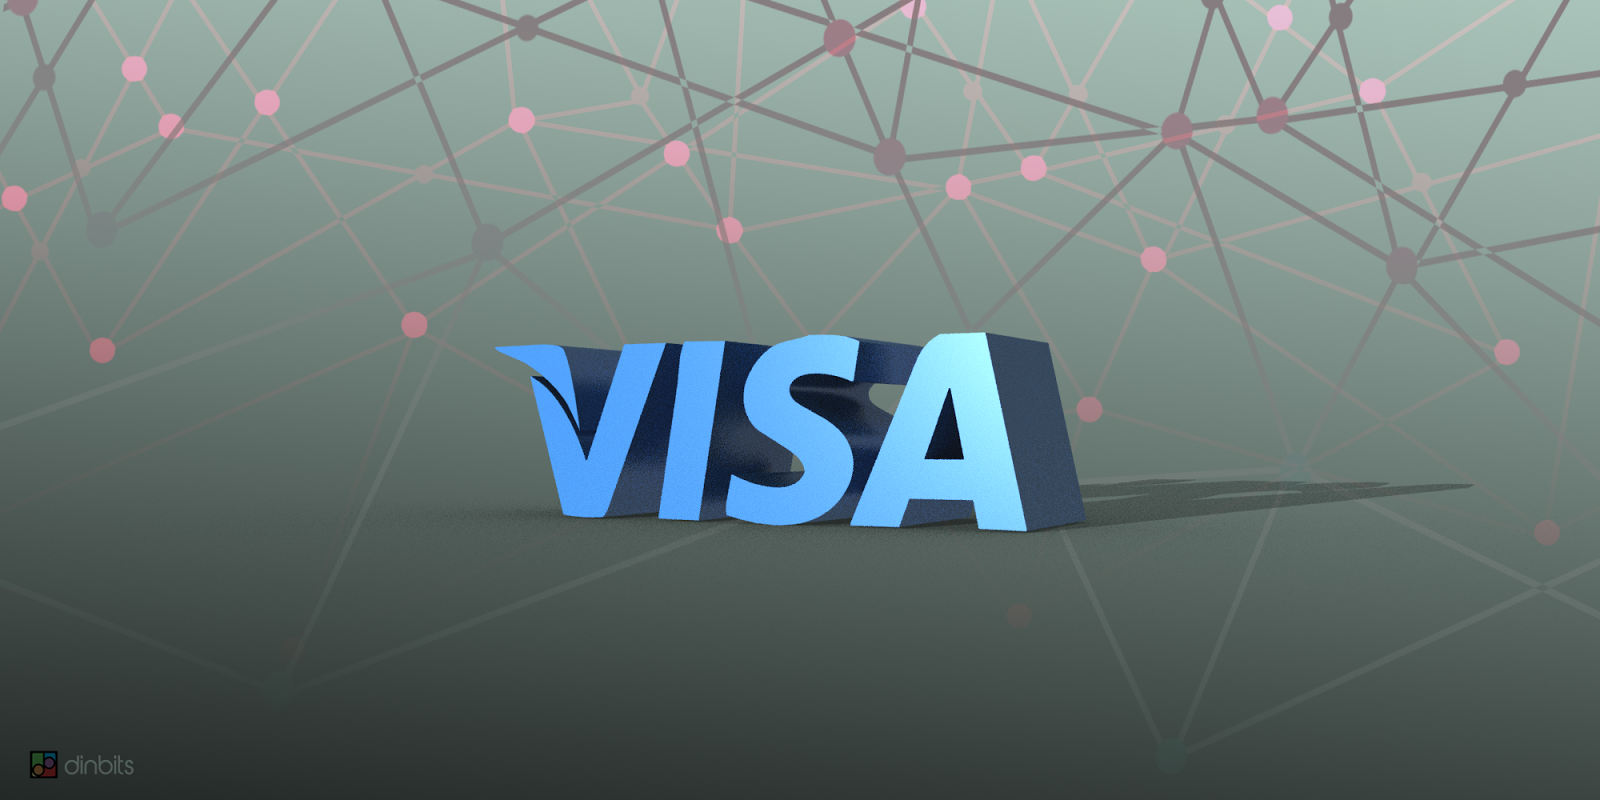 Visa to Acquire Brazilian Fintech Startup Pismo in $1 Billion Cash Deal